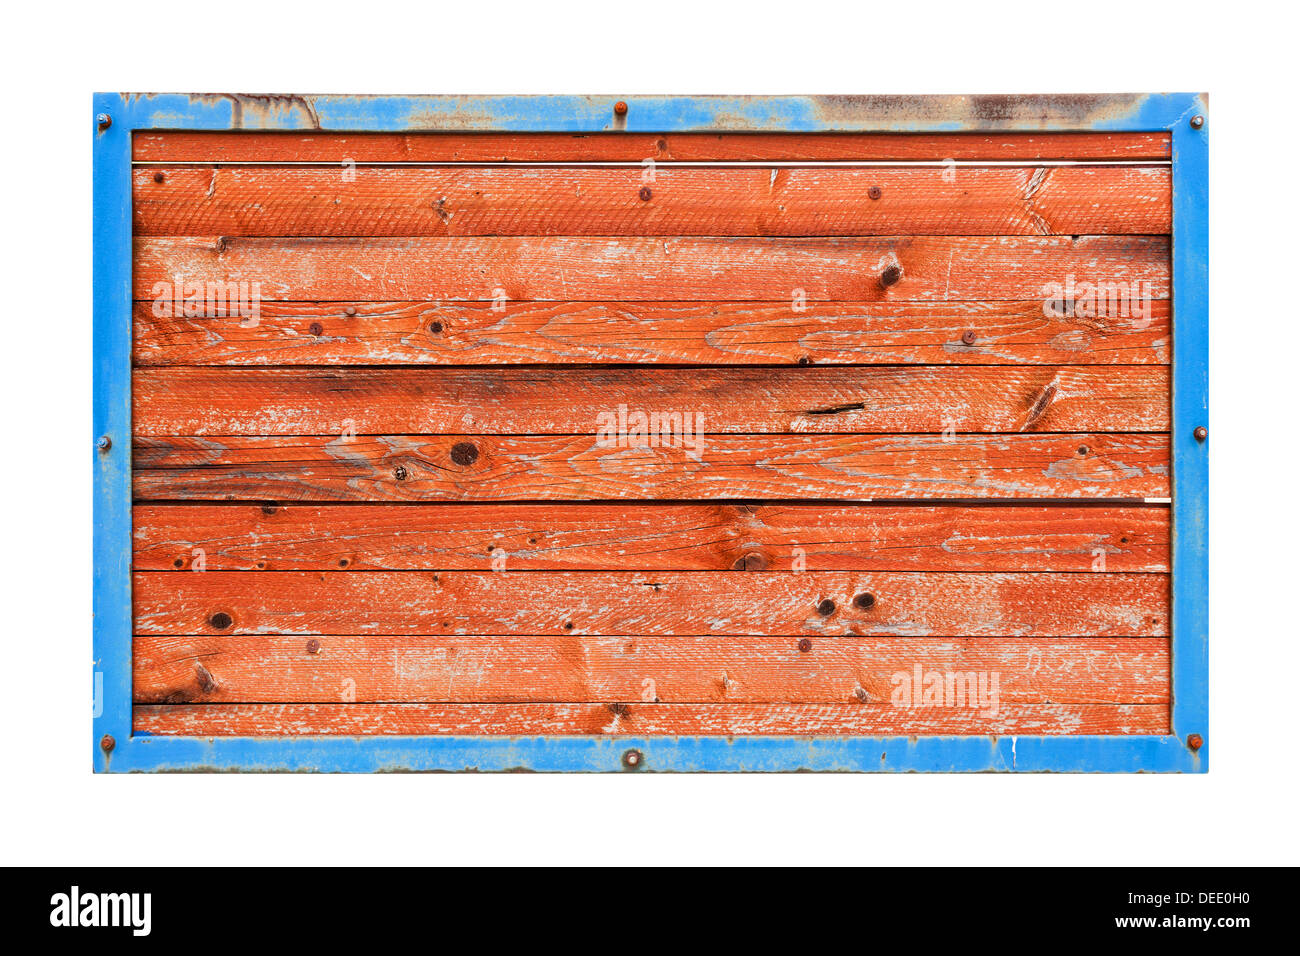 Les planches de bois rouge en bleu metal frame isolated on white Banque D'Images